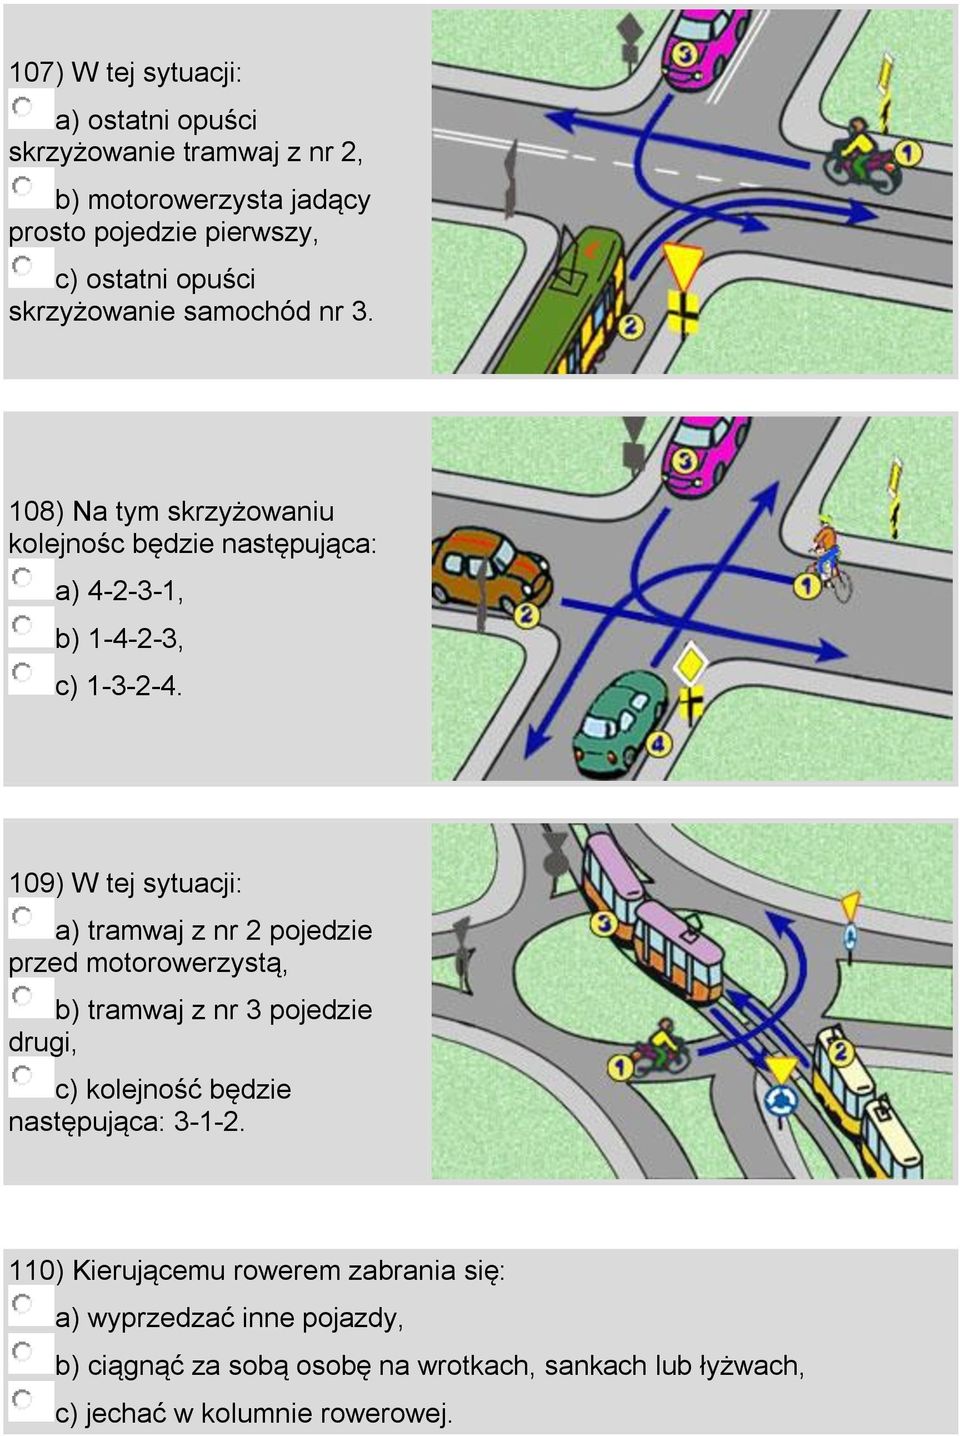 109) W tej sytuacji: a) tramwaj z nr 2 pojedzie przed motorowerzystą, b) tramwaj z nr 3 pojedzie drugi, c) kolejność będzie następująca: